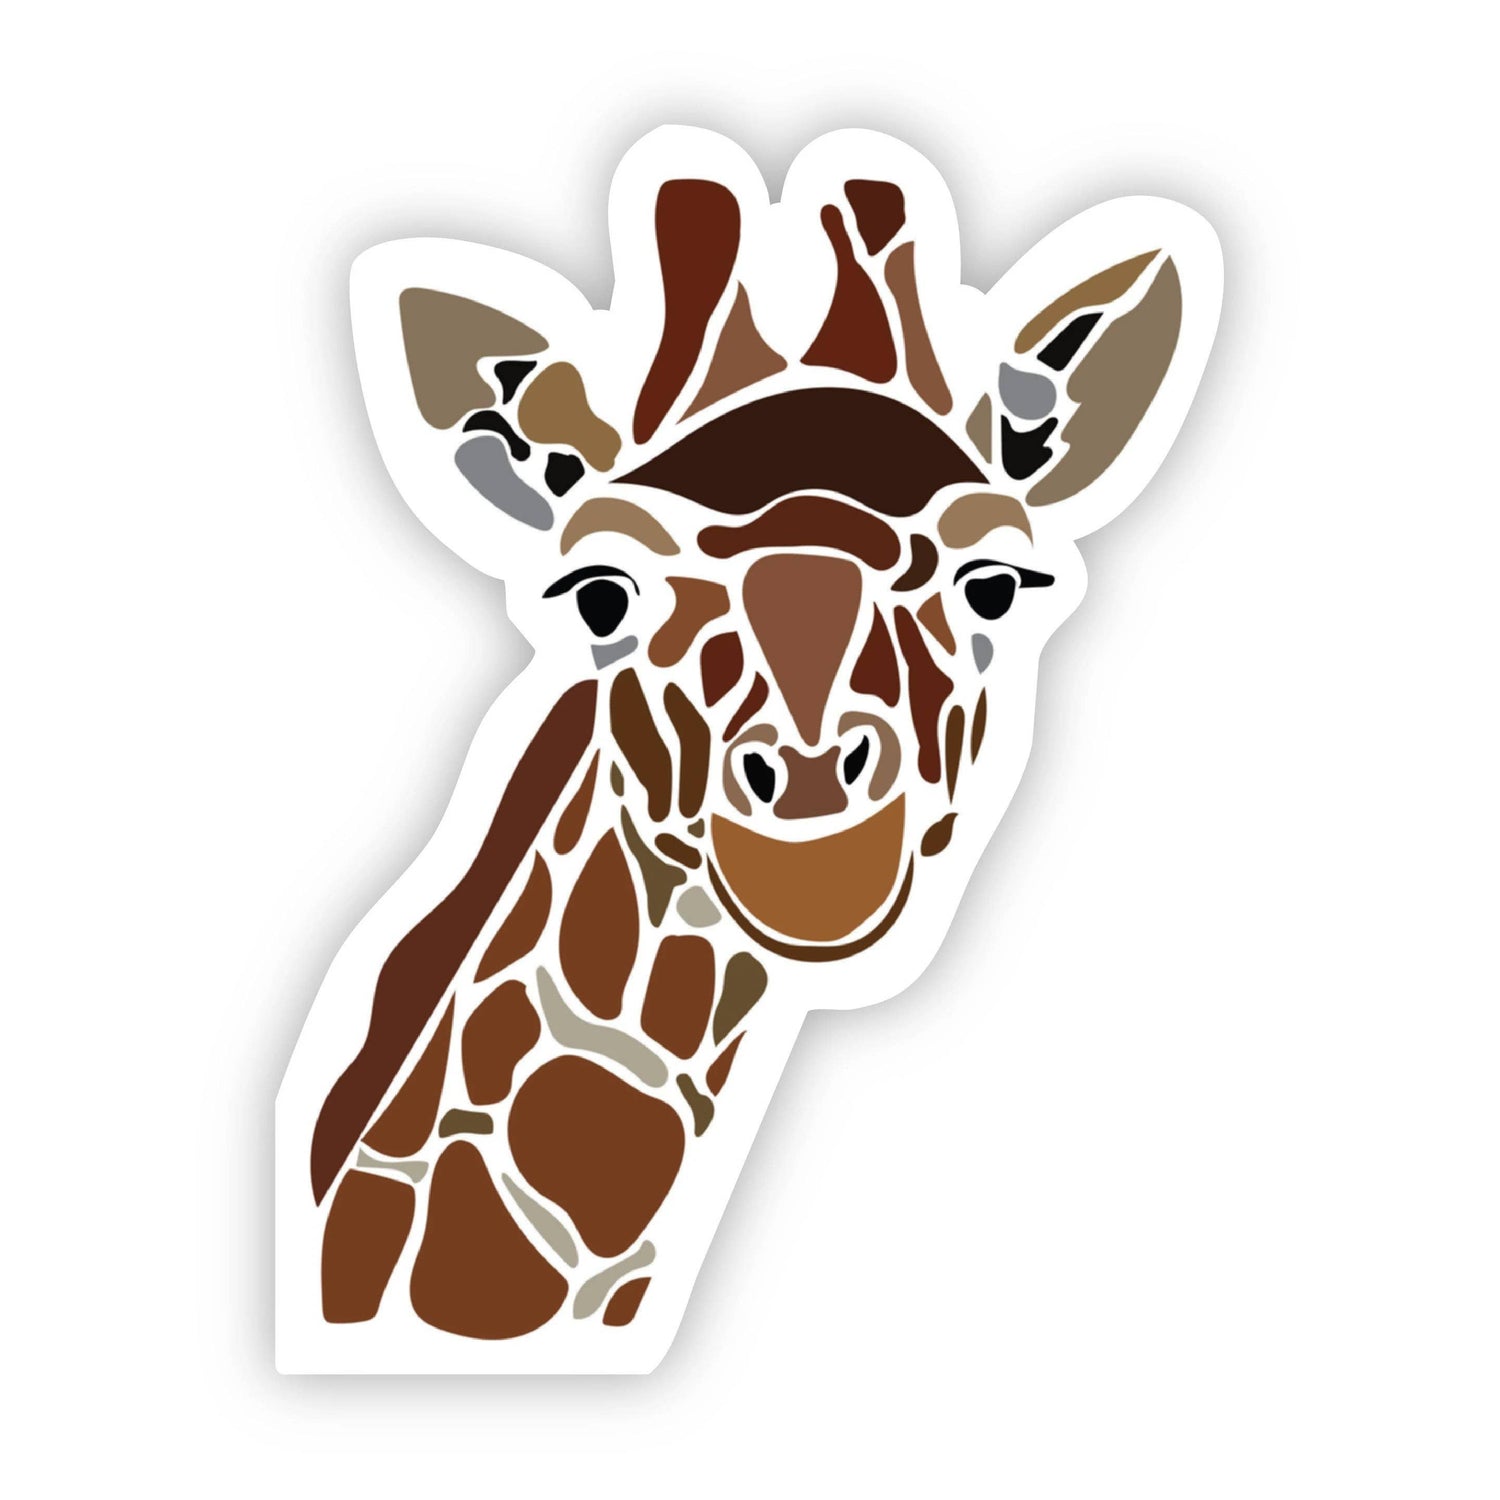 Giraffe head sticker with white background